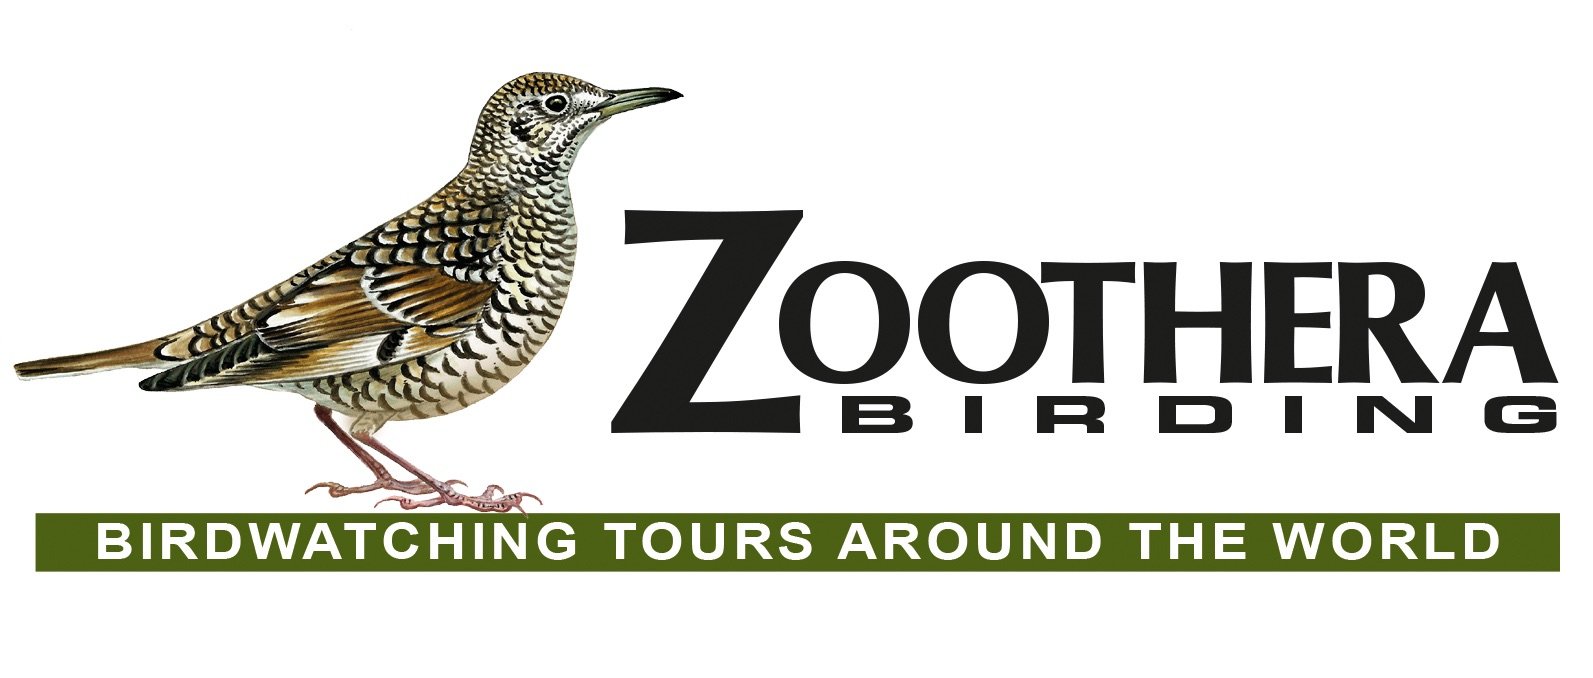 bird tour companies uk